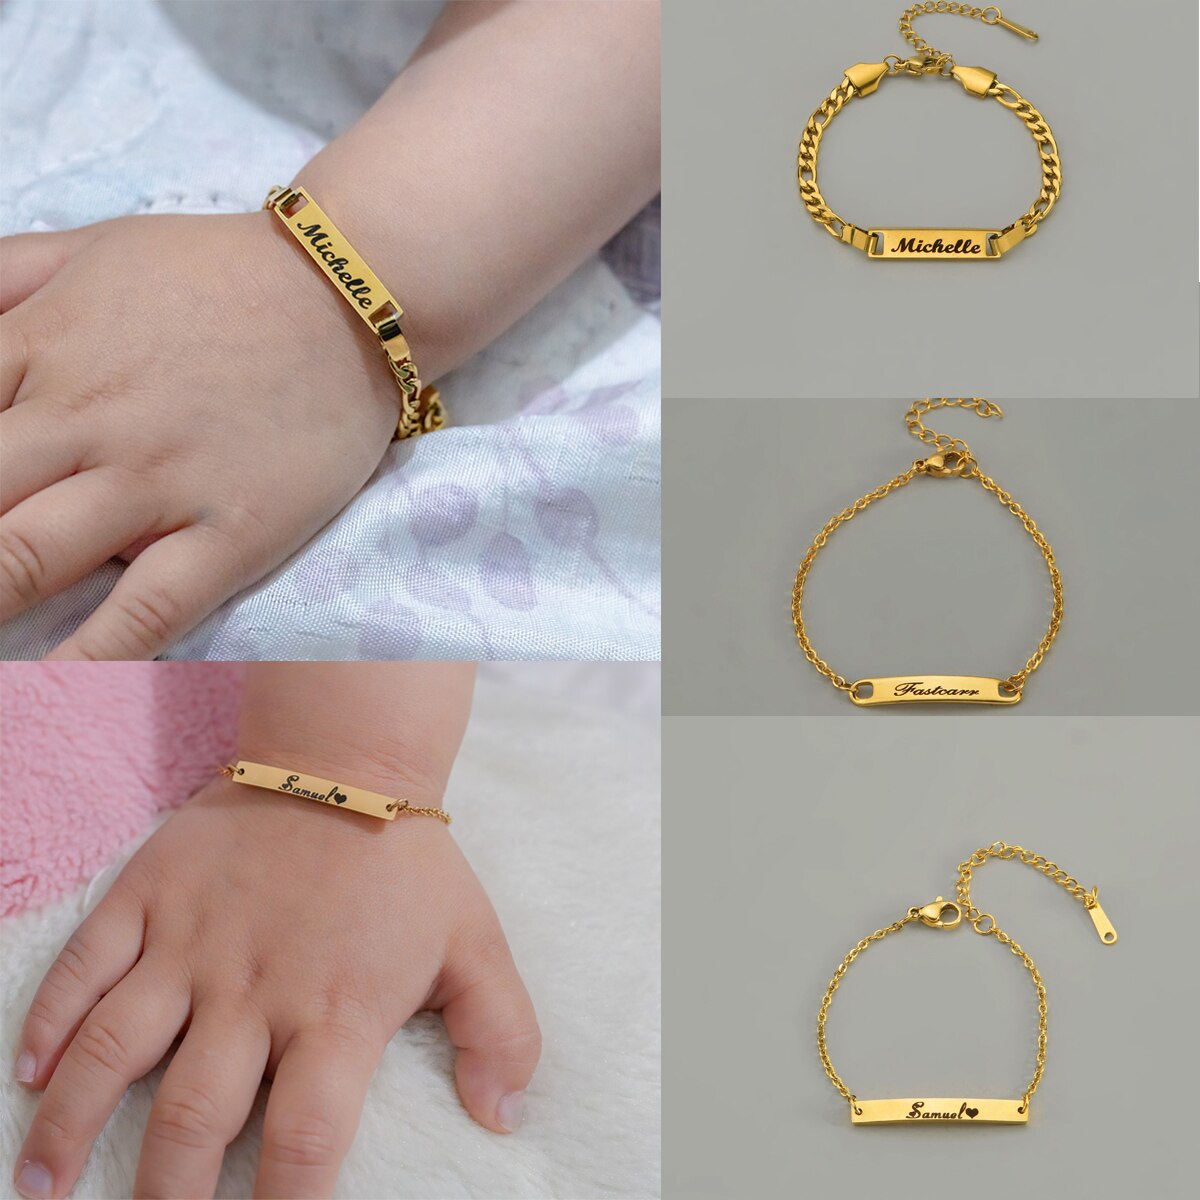 Customized Baby Bracelets (Engrave Nameplated)